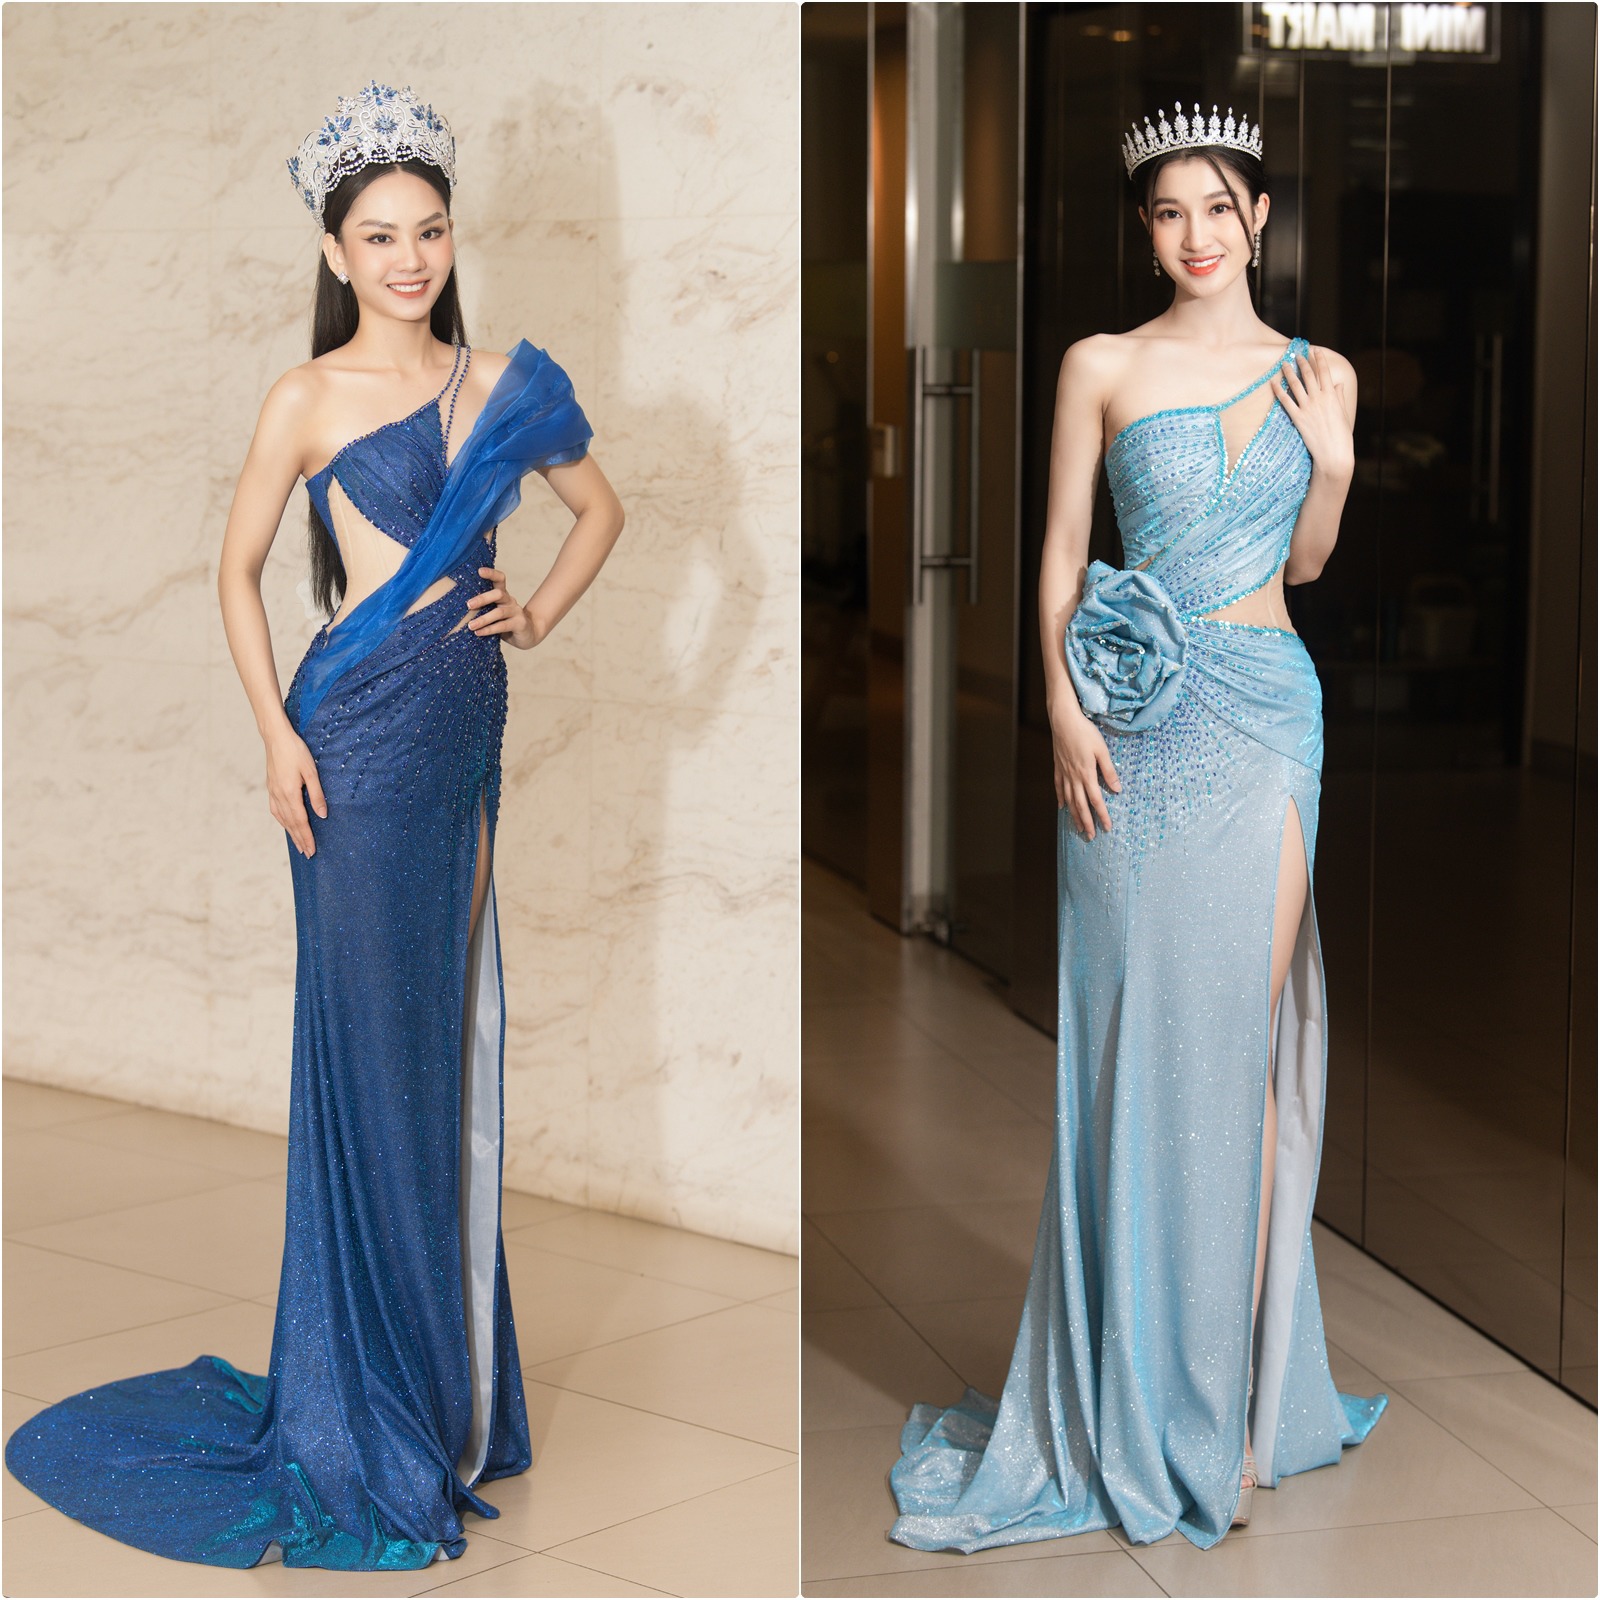 Chuyện váy áo của Top 3 Miss World Vietnam 2022 sau đăng quang: lộng lẫy, chỉn chu, đồng điệu - 11